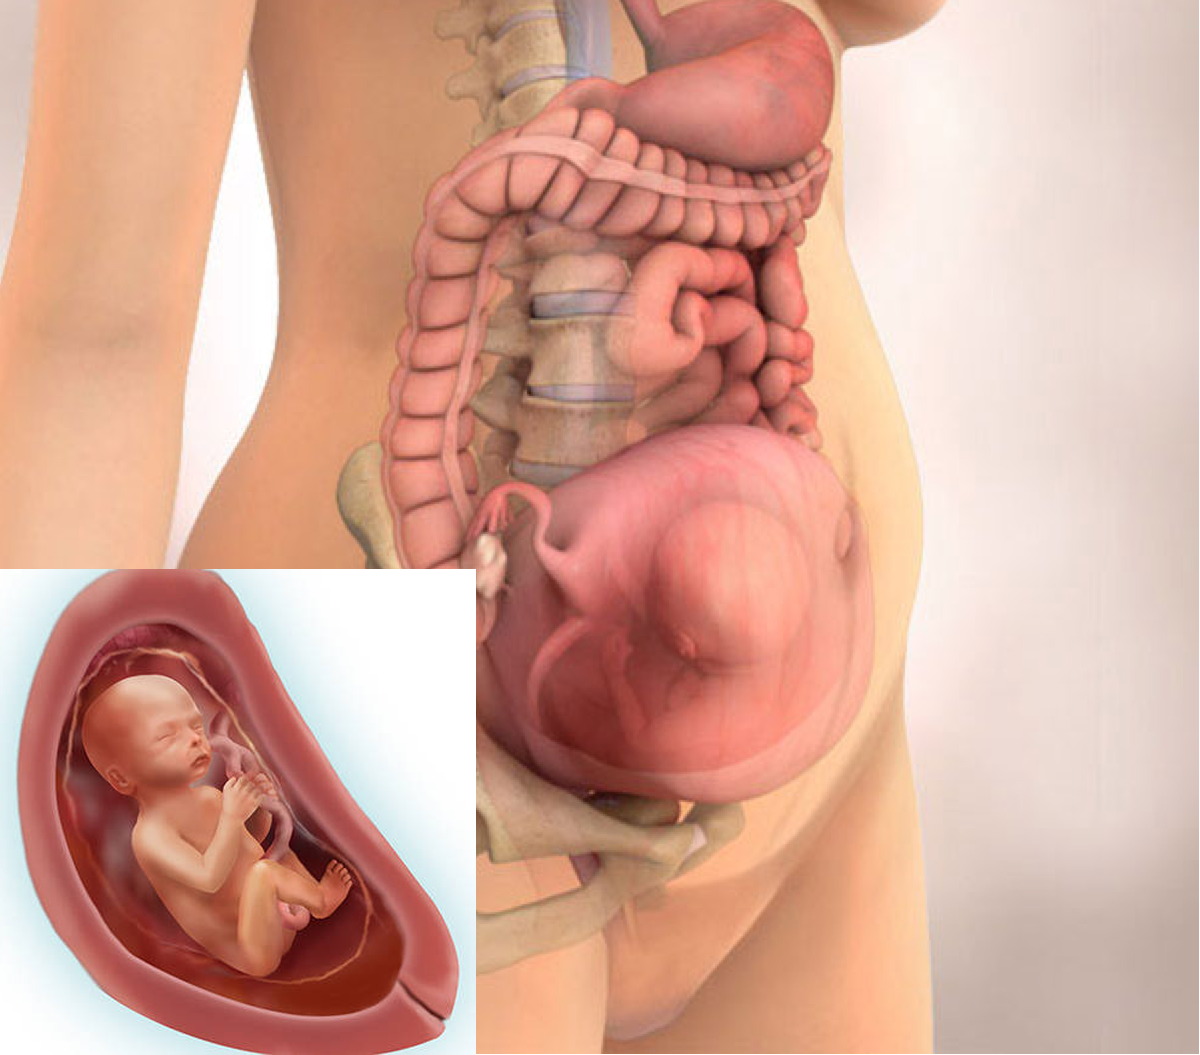 22 неделя беременности: развитие плода, его размер, ощущения женщины, шевеления малыша. фото и видео